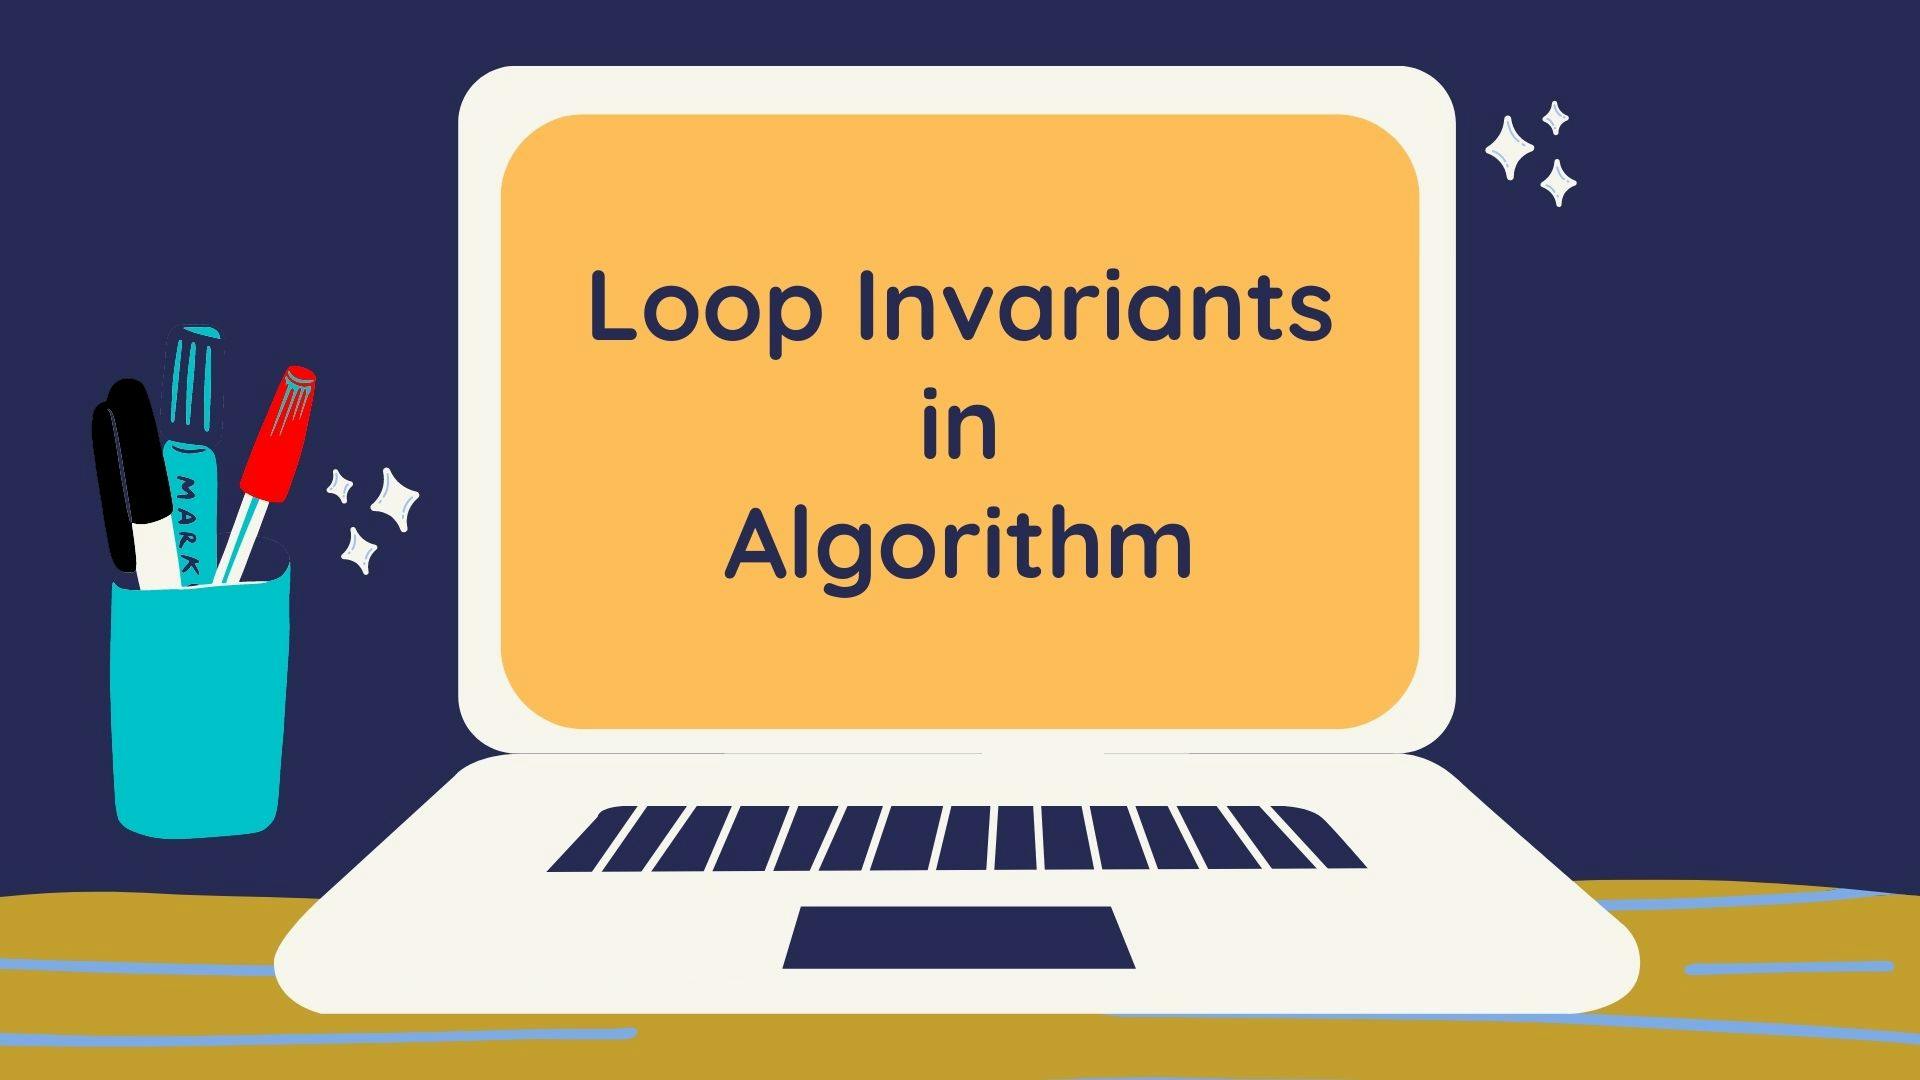 Loop Invariants